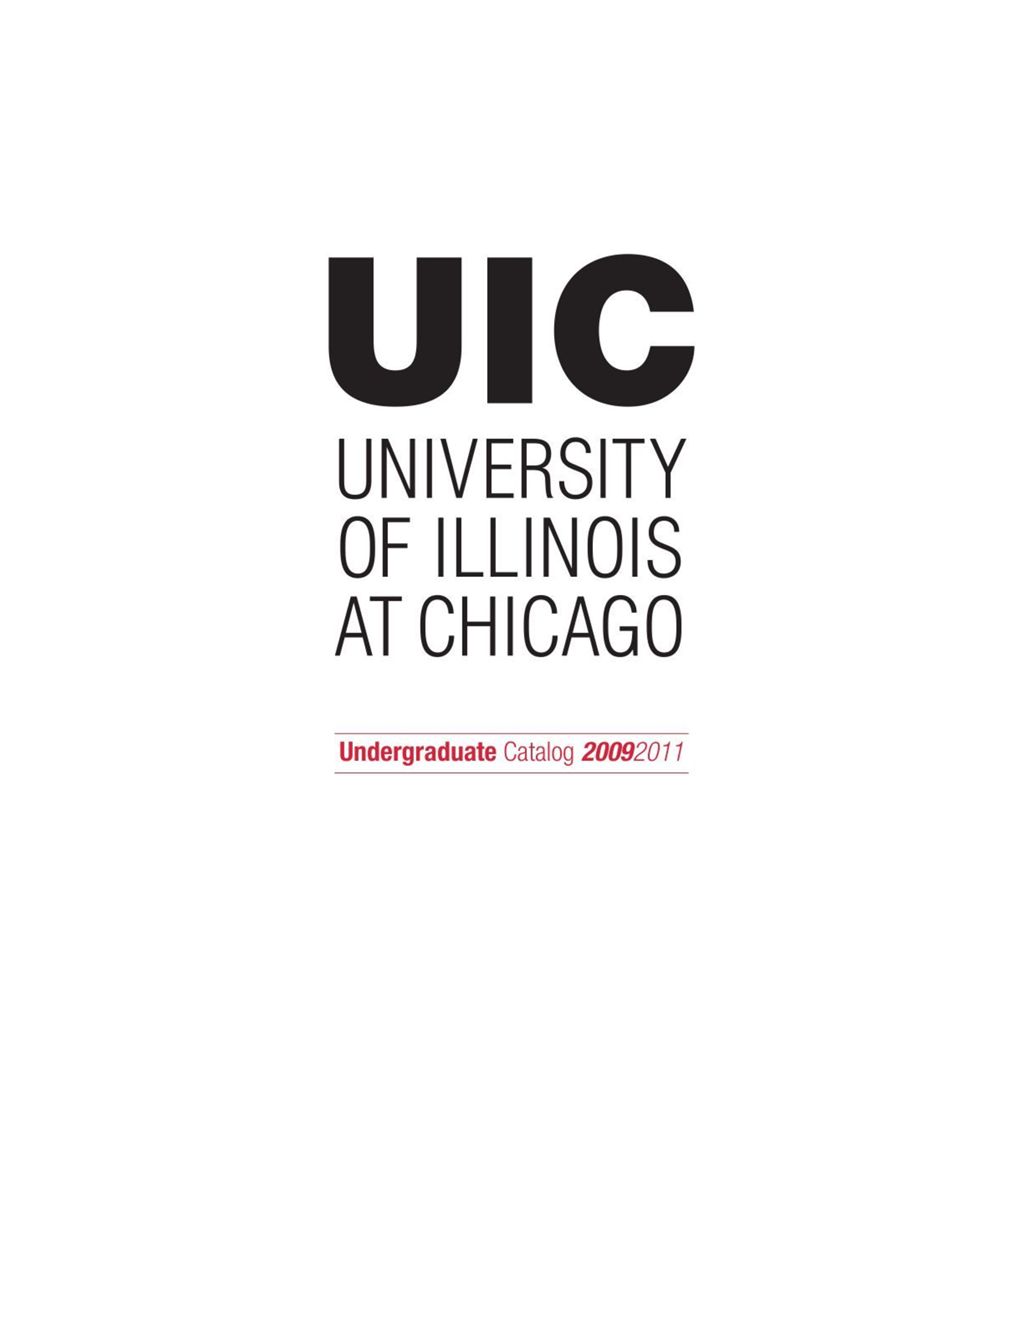 Miniature of Undergraduate Catalog, 2009-2011